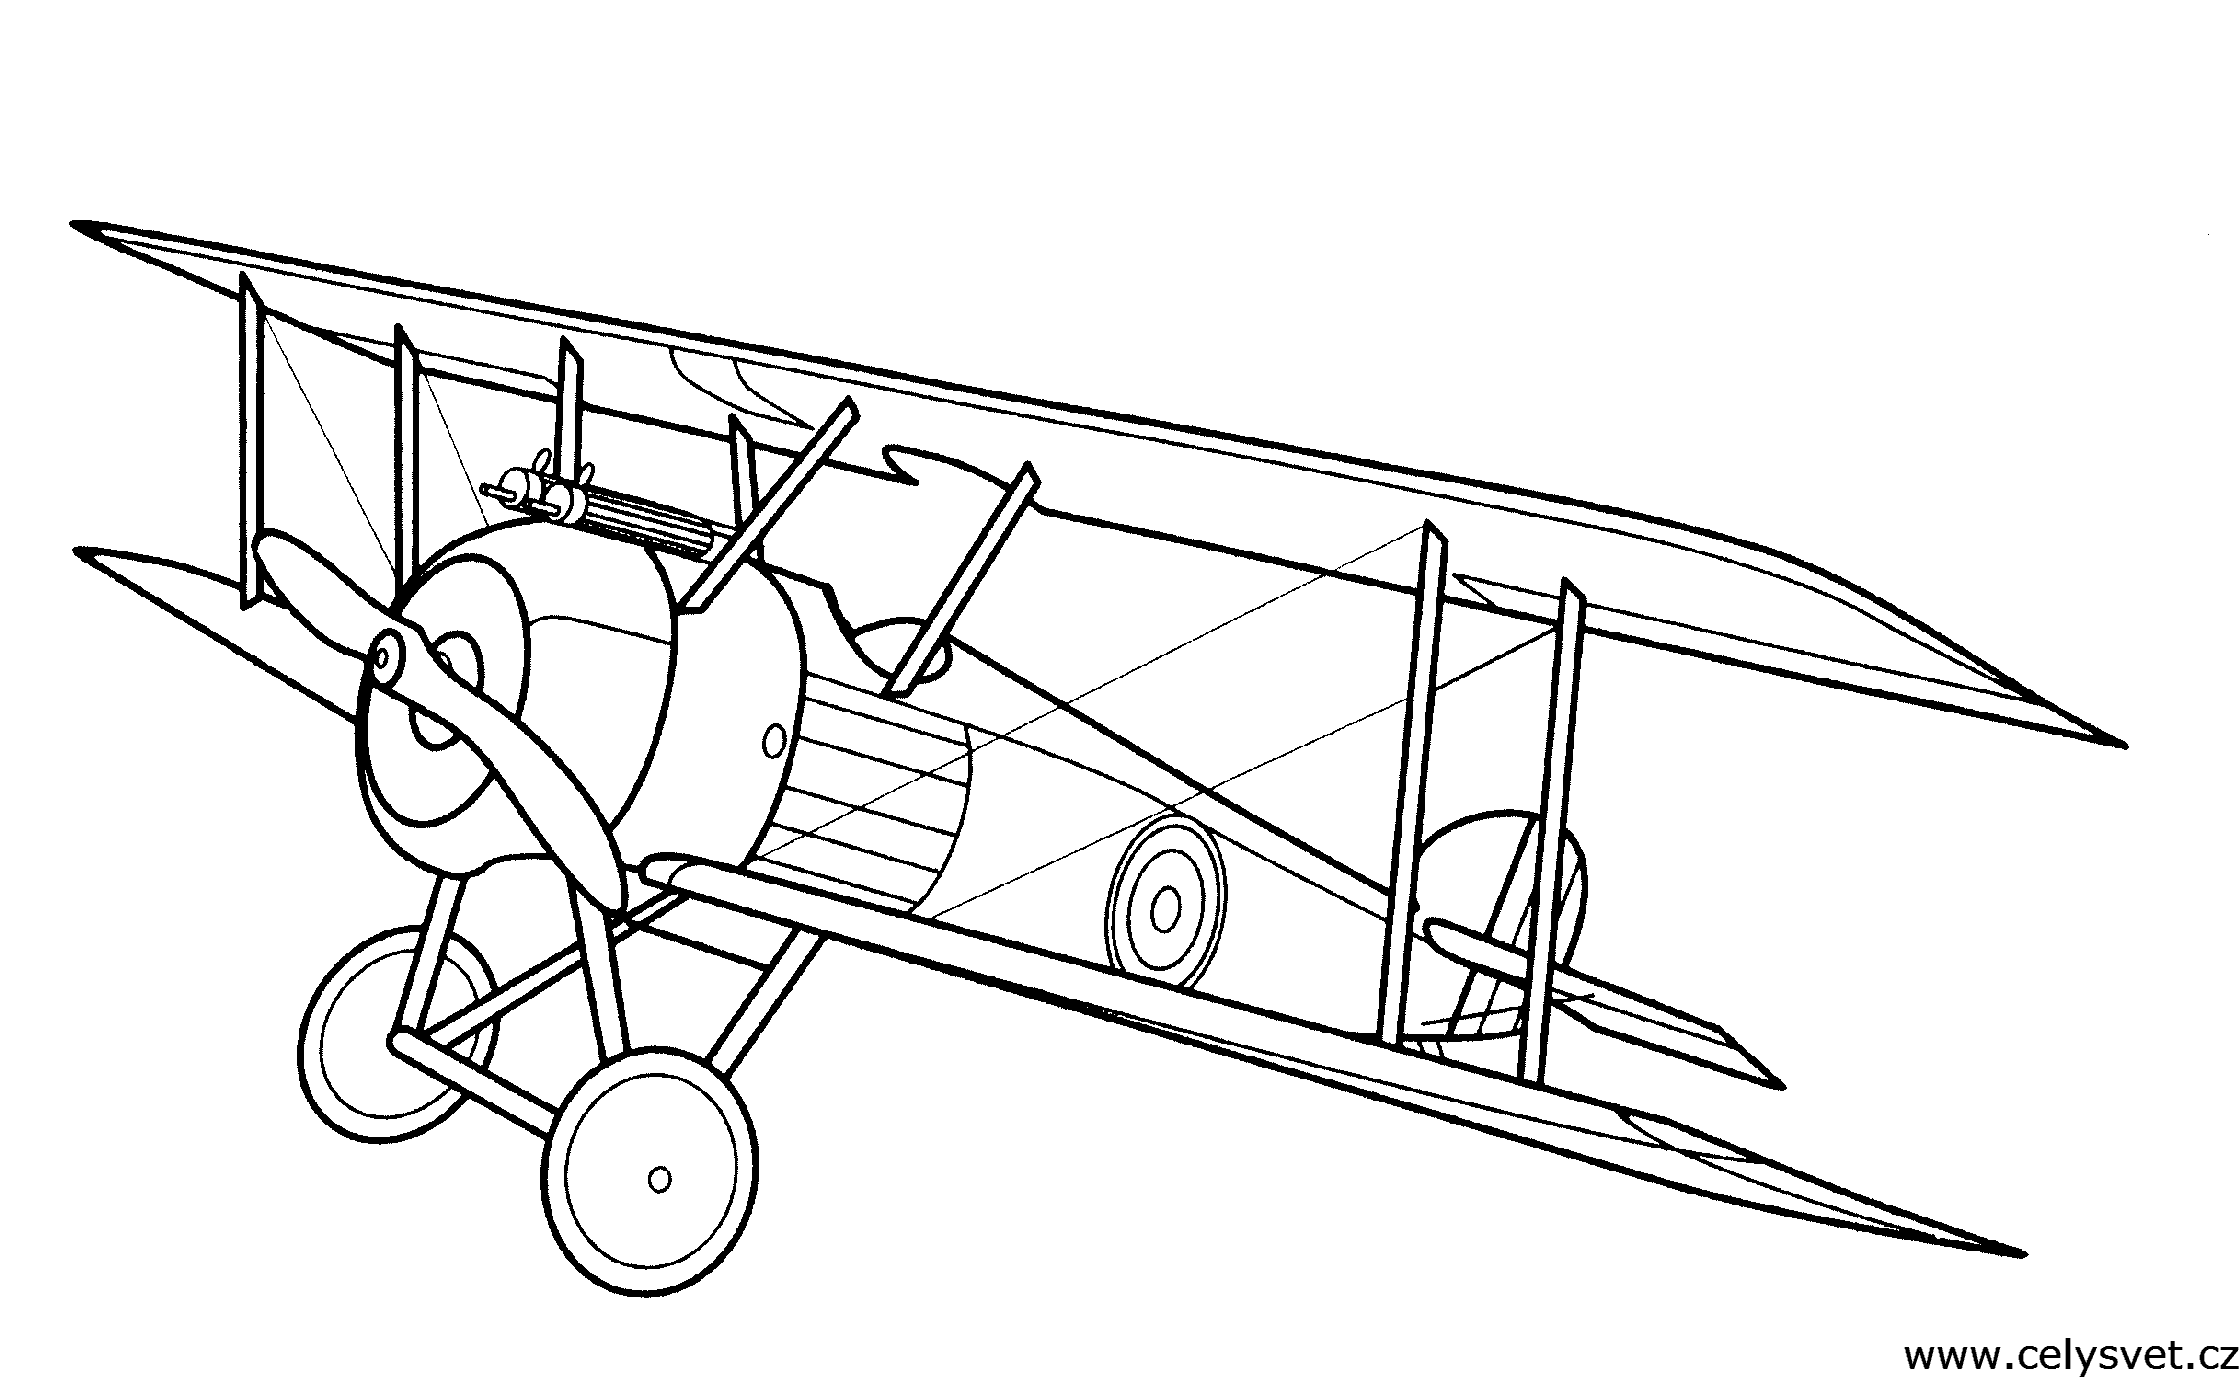 Vintage Airplane Drawing at GetDrawings Free download